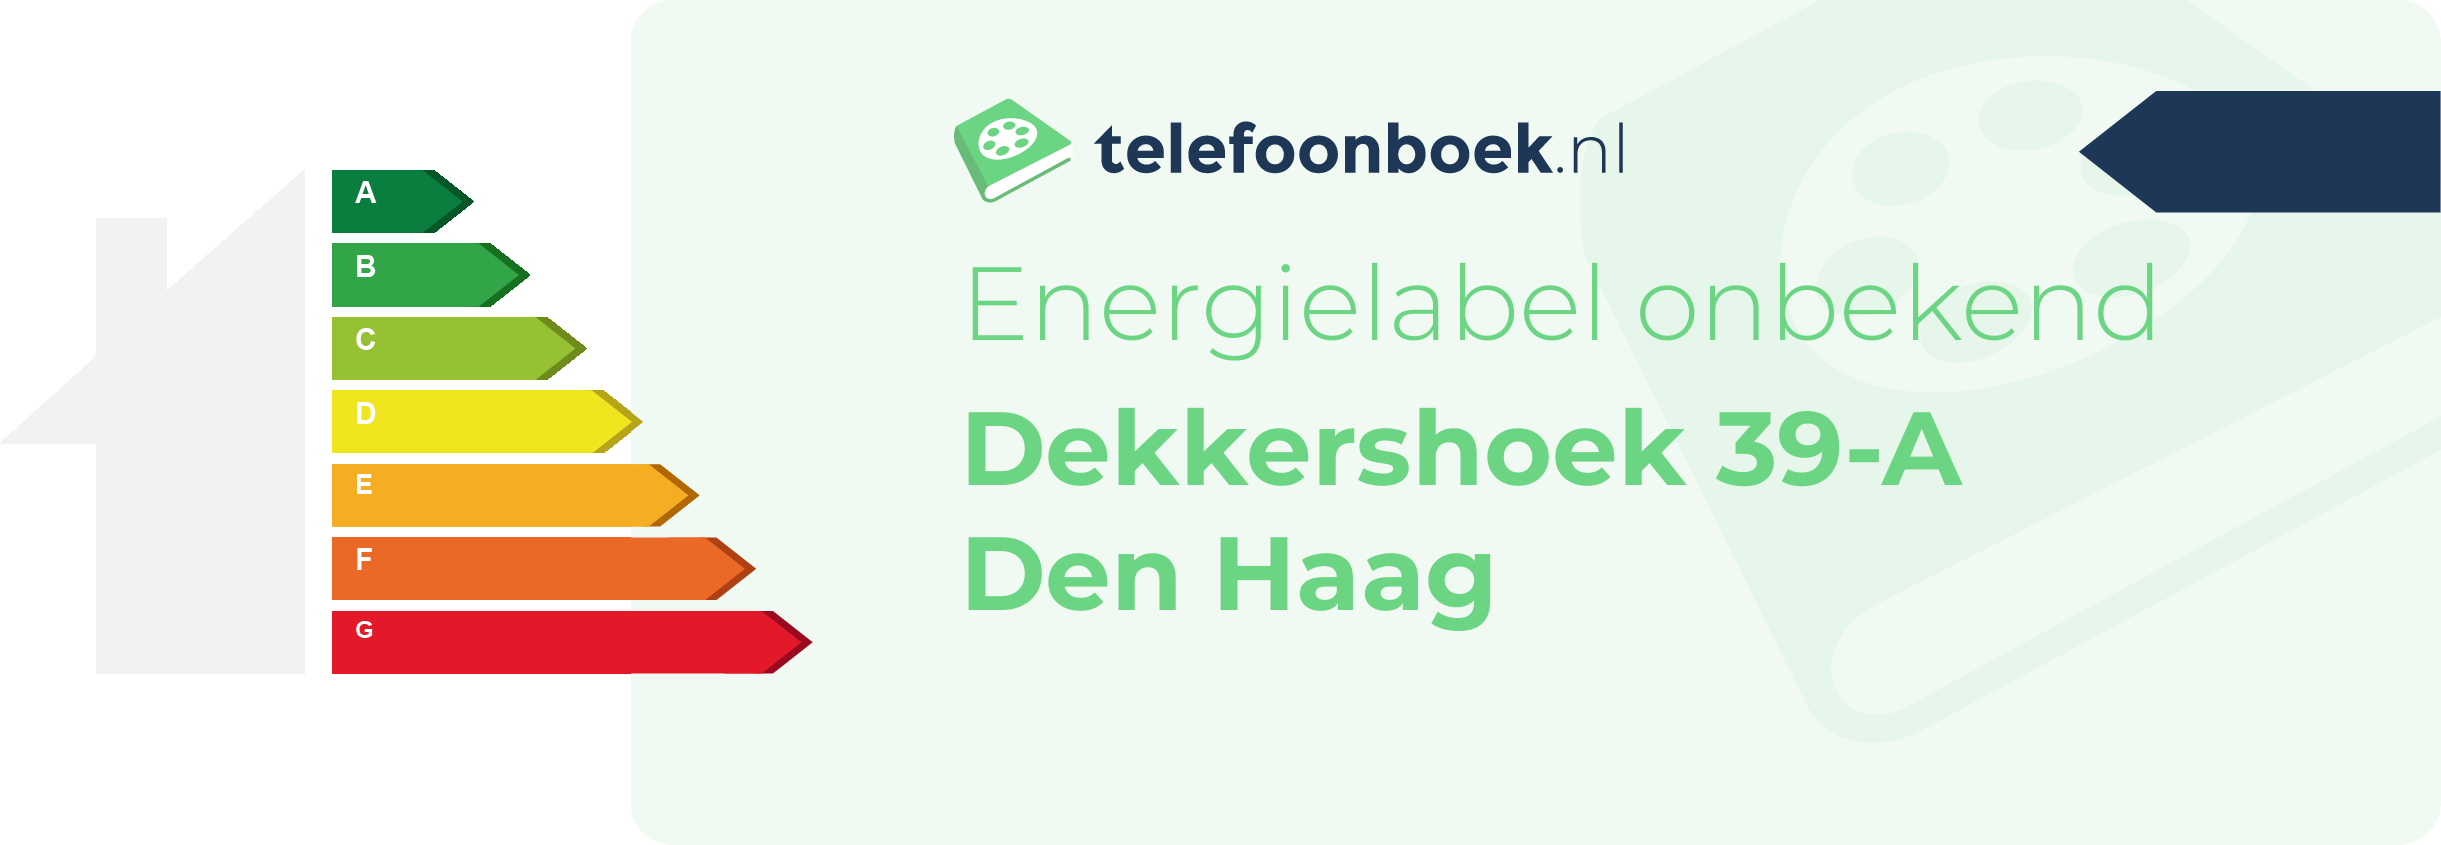 Energielabel Dekkershoek 39-A Den Haag